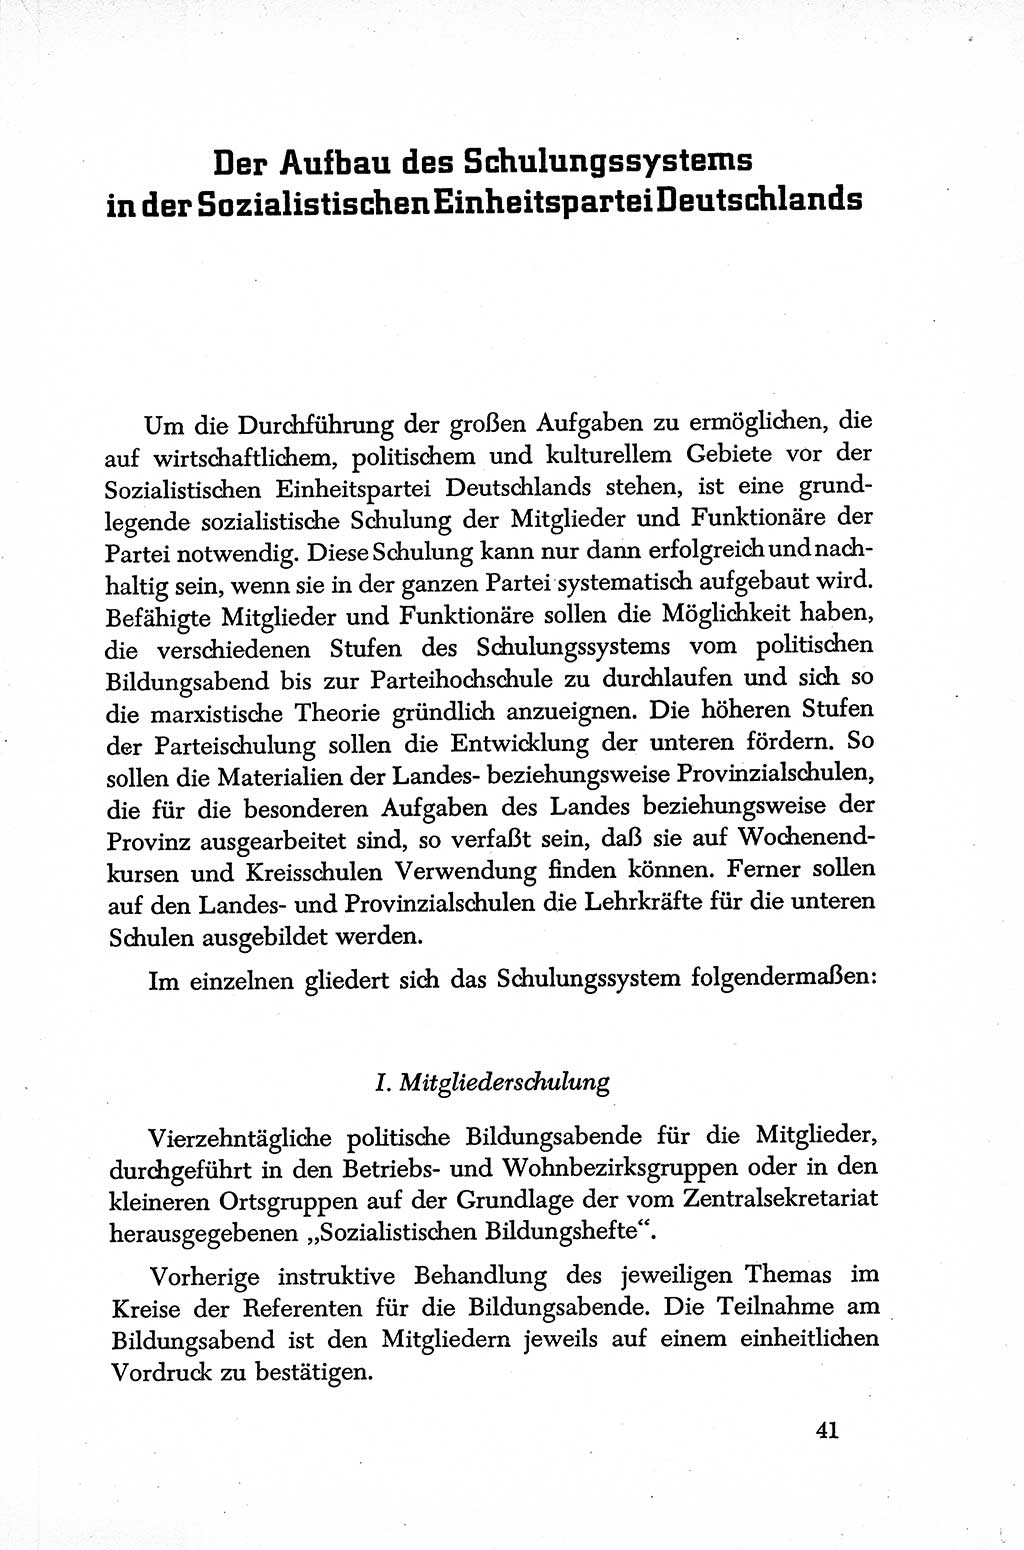 Dokumente der Sozialistischen Einheitspartei Deutschlands (SED) [Sowjetische Besatzungszone (SBZ) Deutschlands] 1946-1948, Seite 41 (Dok. SED SBZ Dtl. 1946-1948, S. 41)